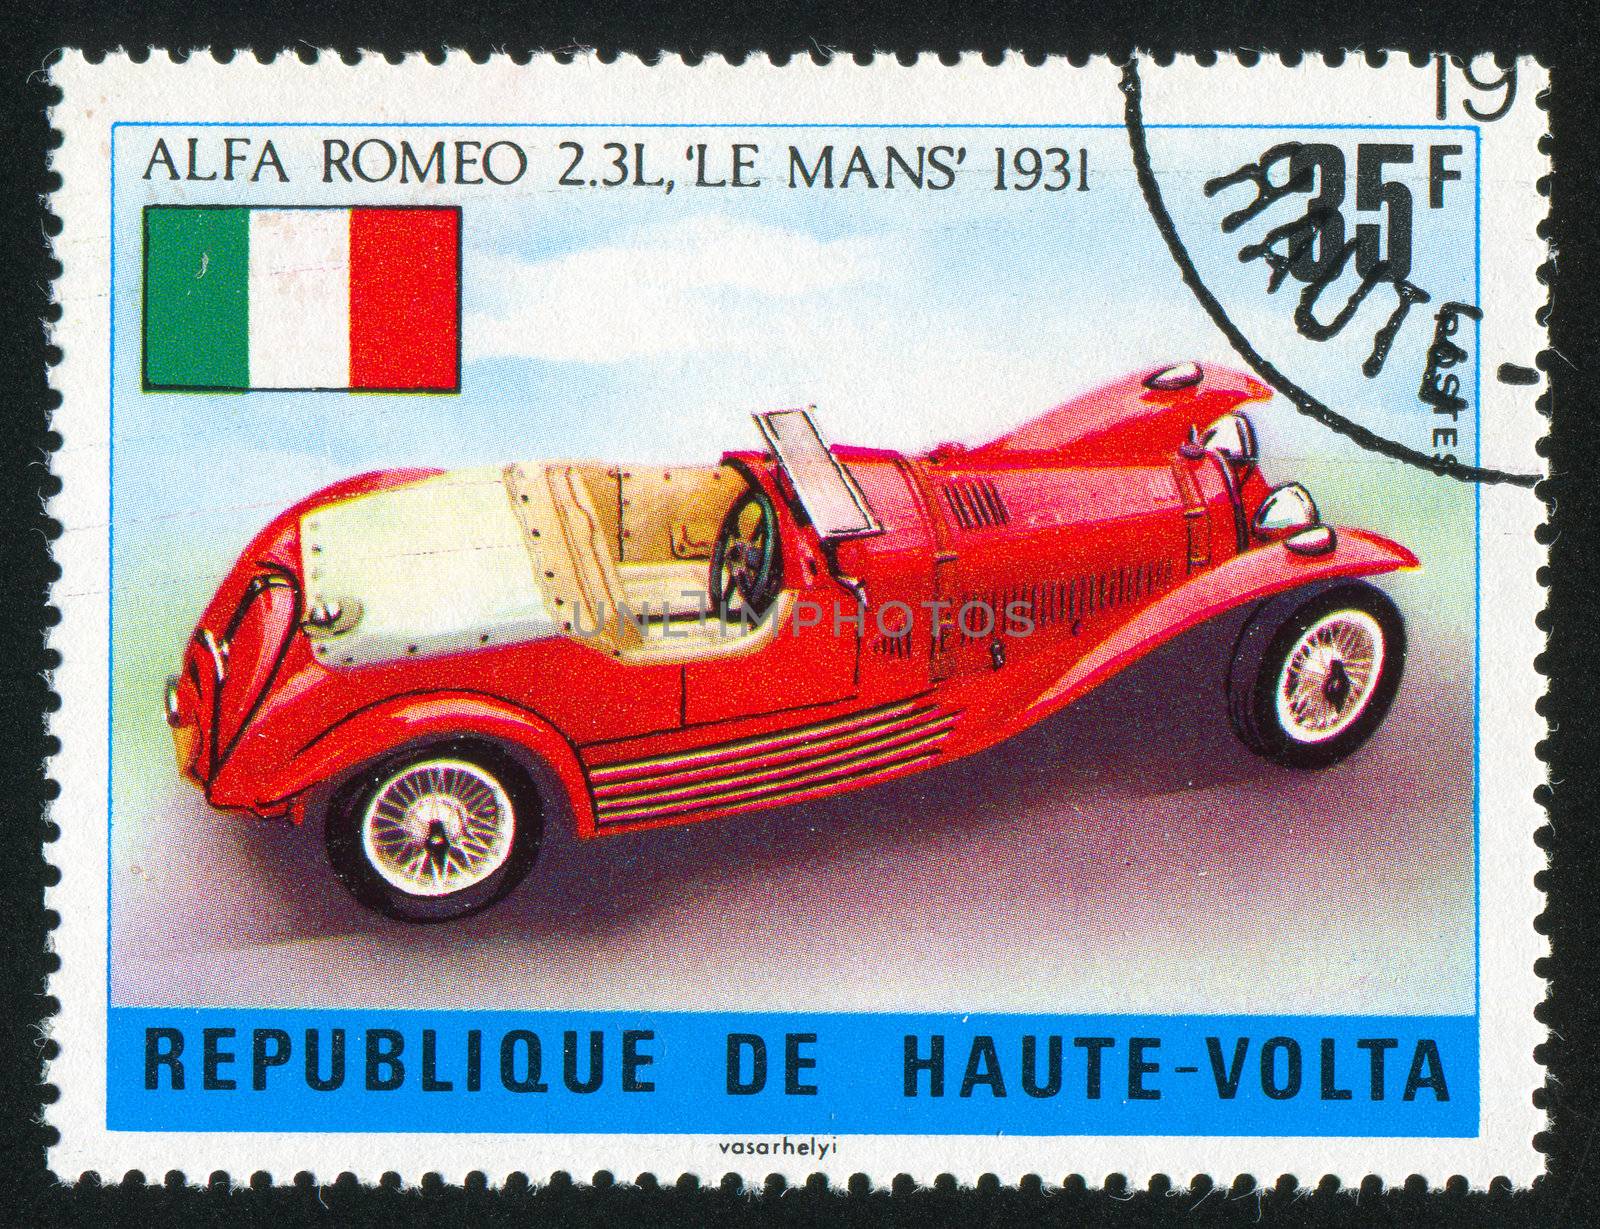 Alfa Romeo by rook